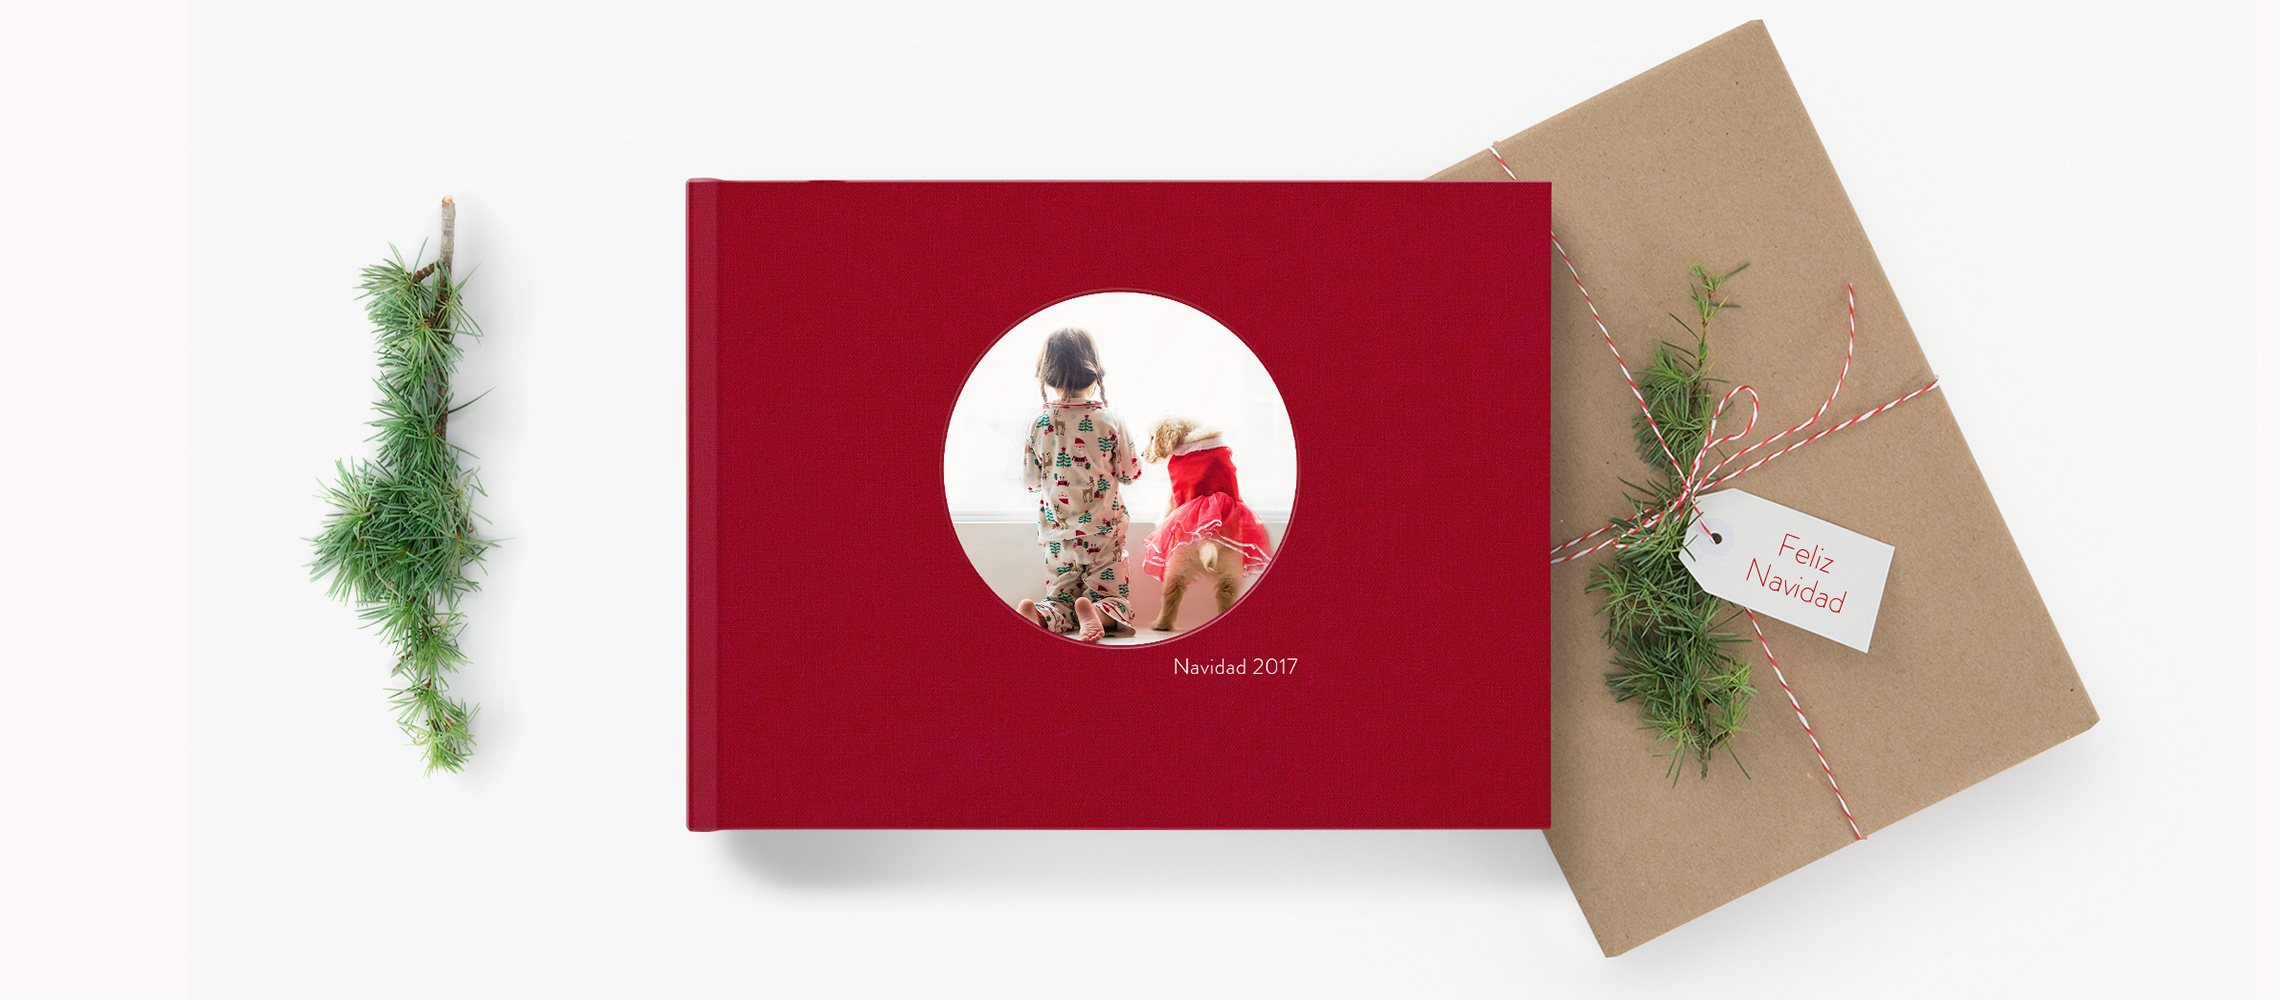 Un libro de fotos rojo junto a un regalo de Navidad rodeado de decoración navideña.